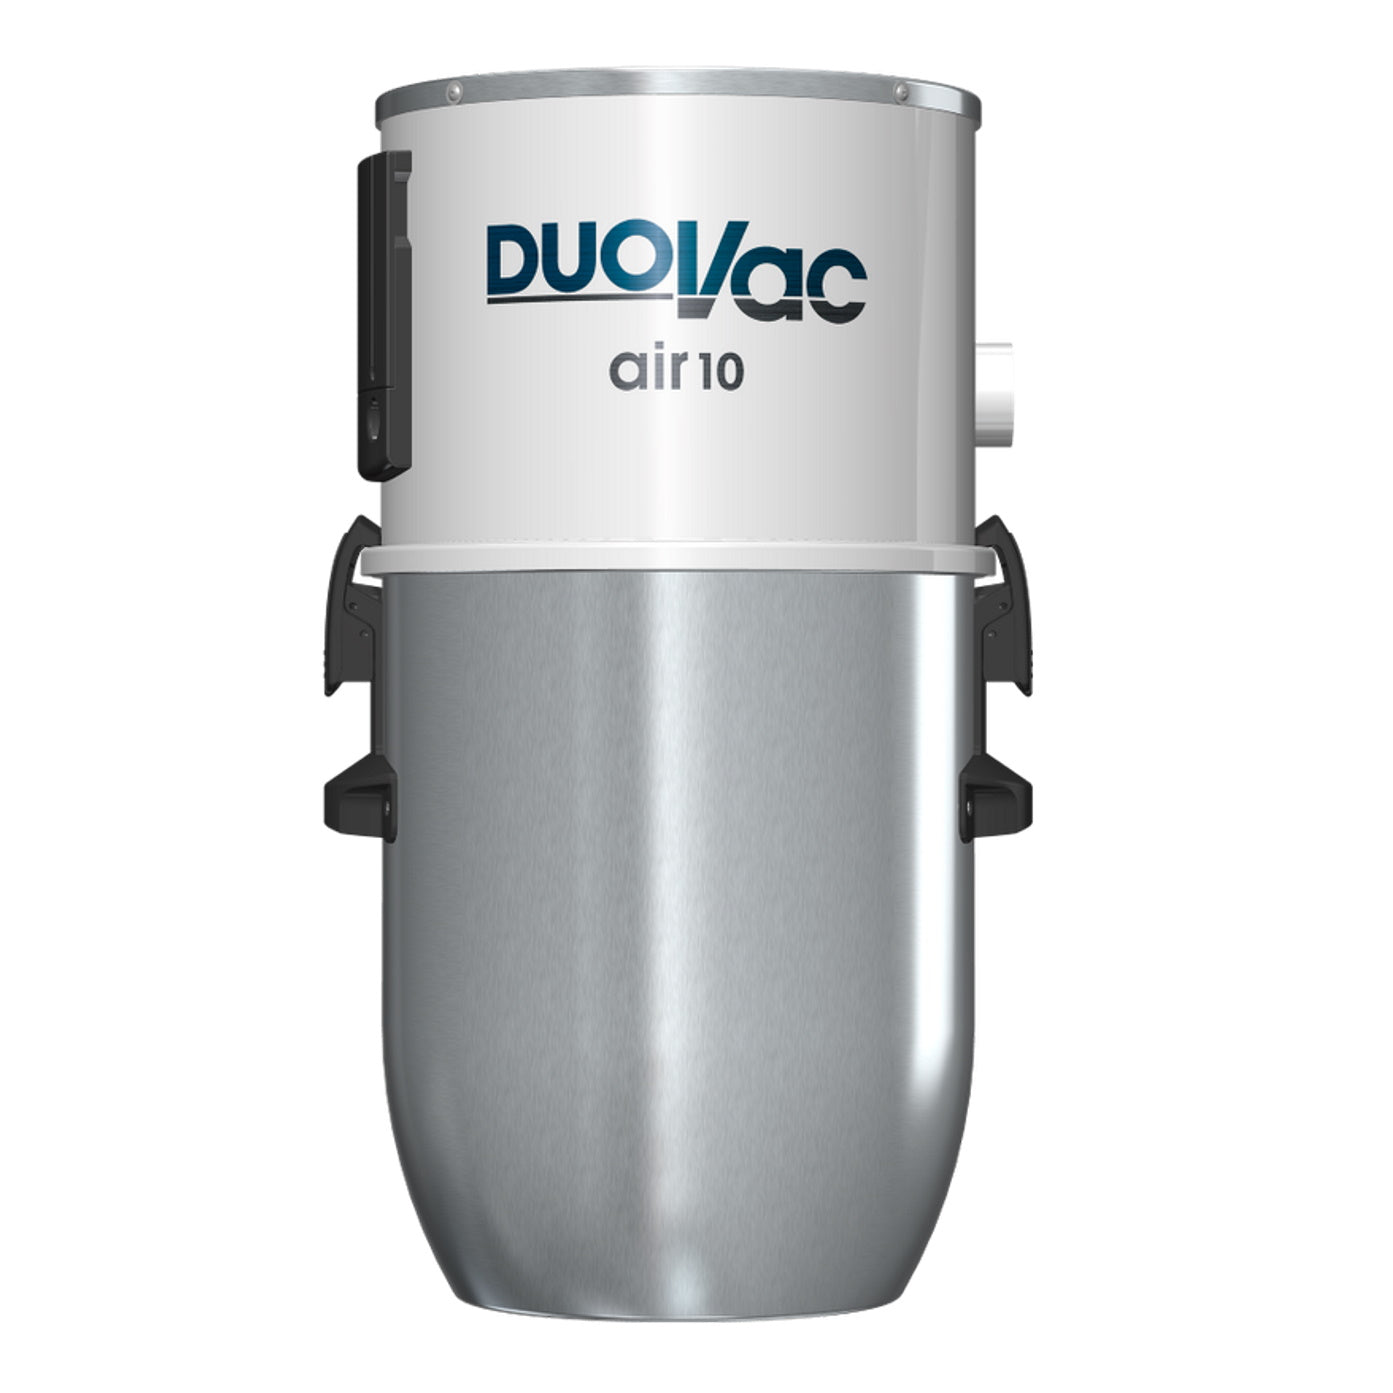 Aspirateur Duovac Air10 - Alarme Caméra Surveillance (ACS) 